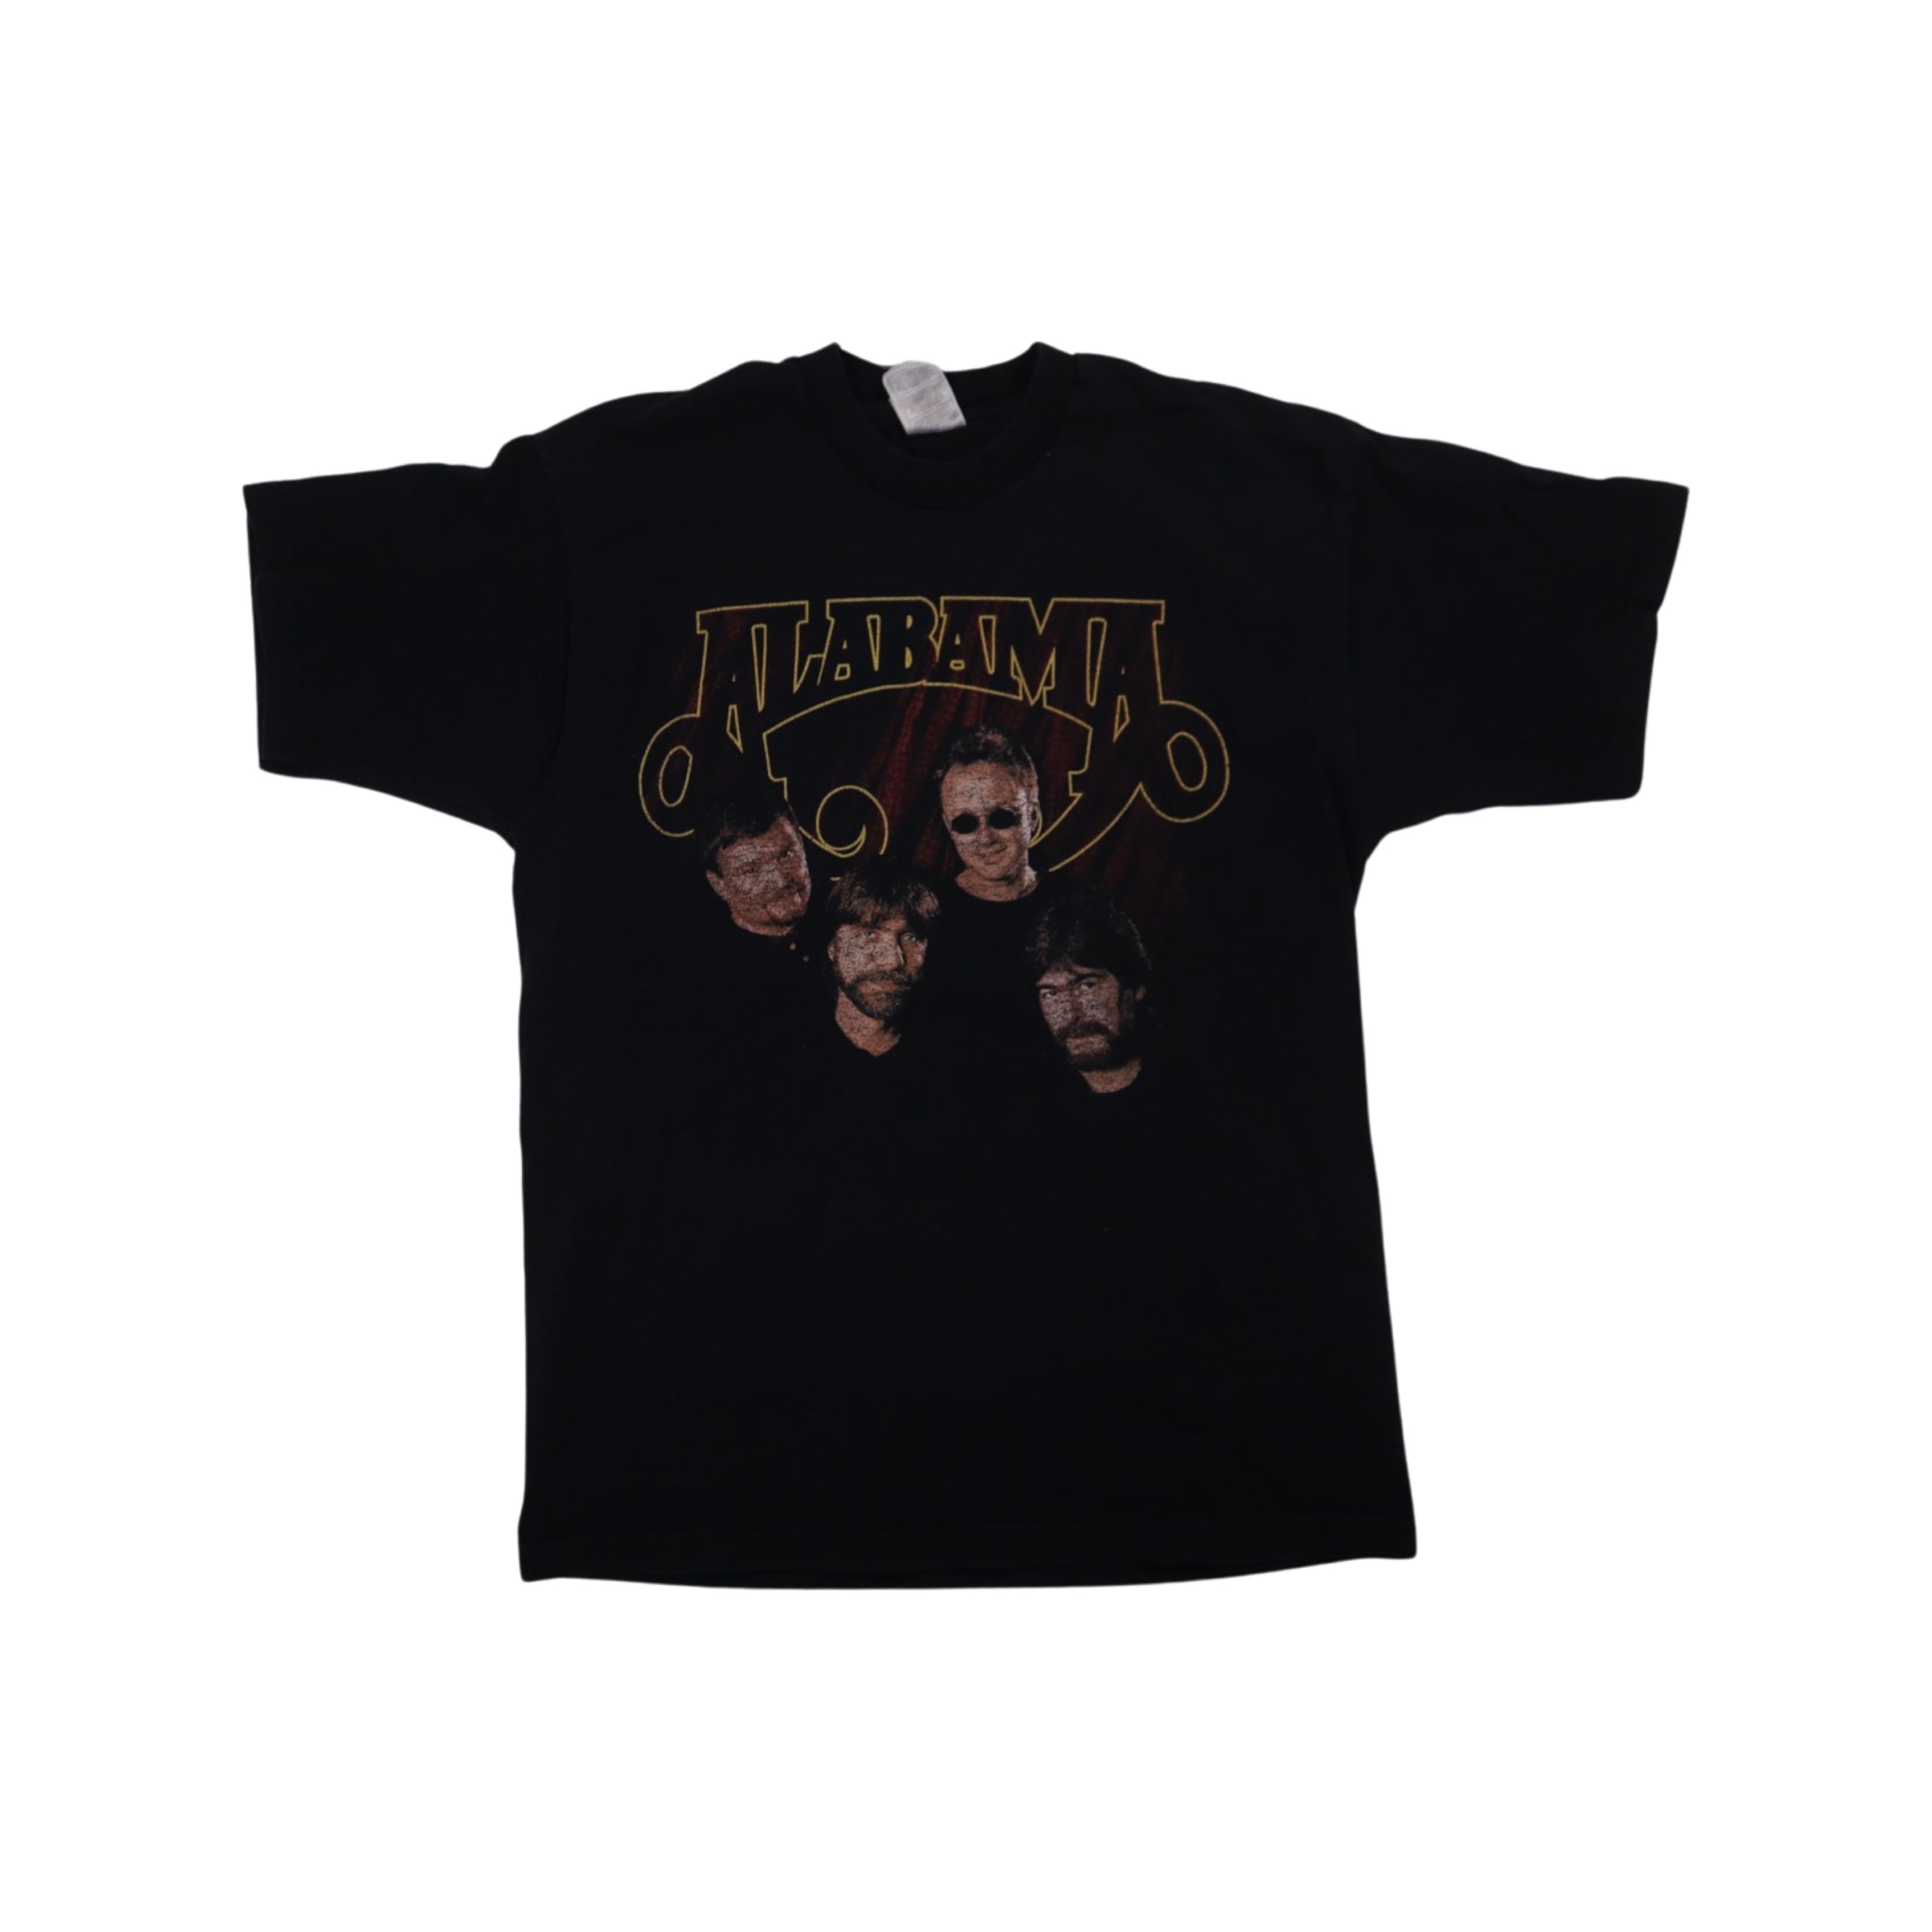 Alabama 1998 Tour T-Shirt (Large)